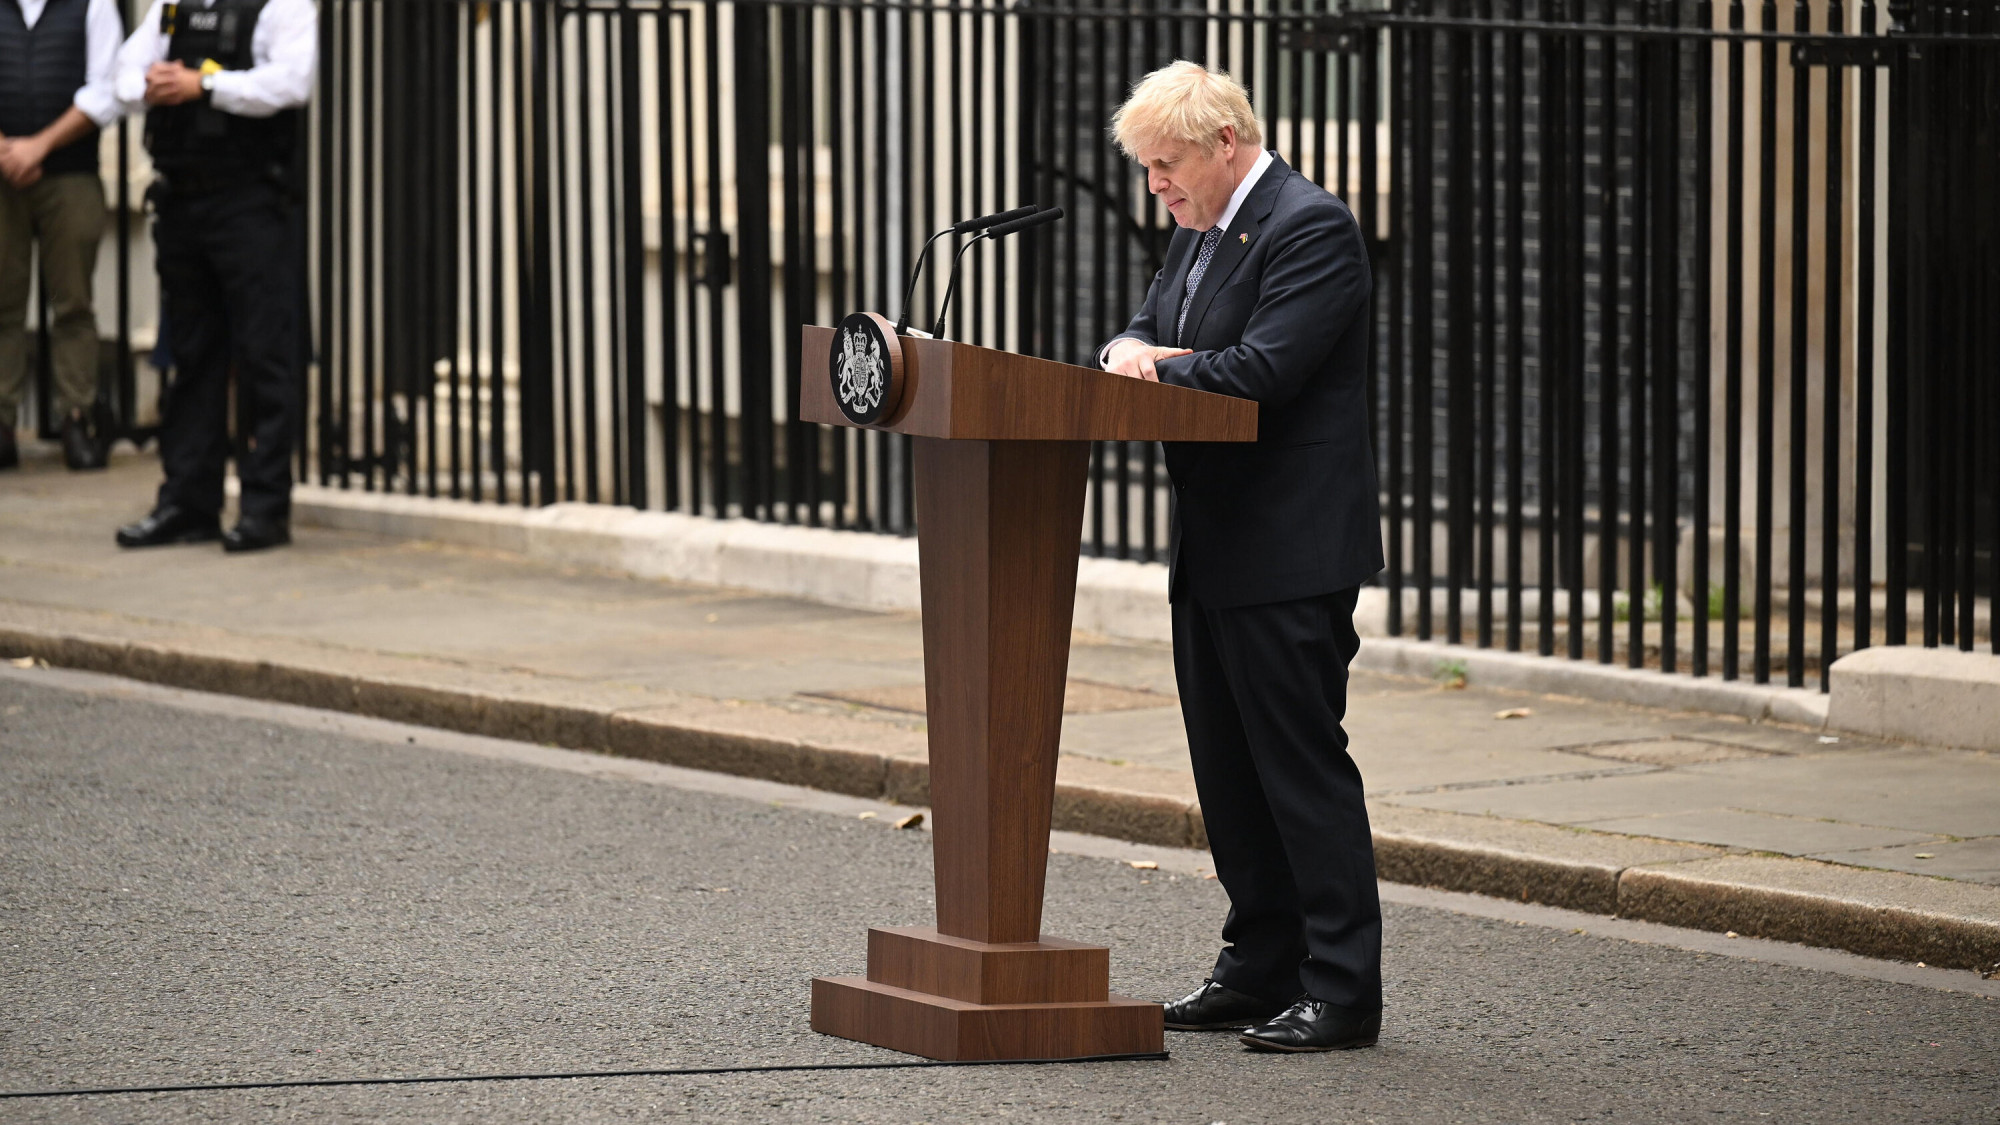 Phía trước tư dinh Thủ tướng tại số 10 phố Downing, Thủ tướng Anh Boris Johnson tuyên bố từ chức sau khi bị nội các và Đảng của ông cô lập